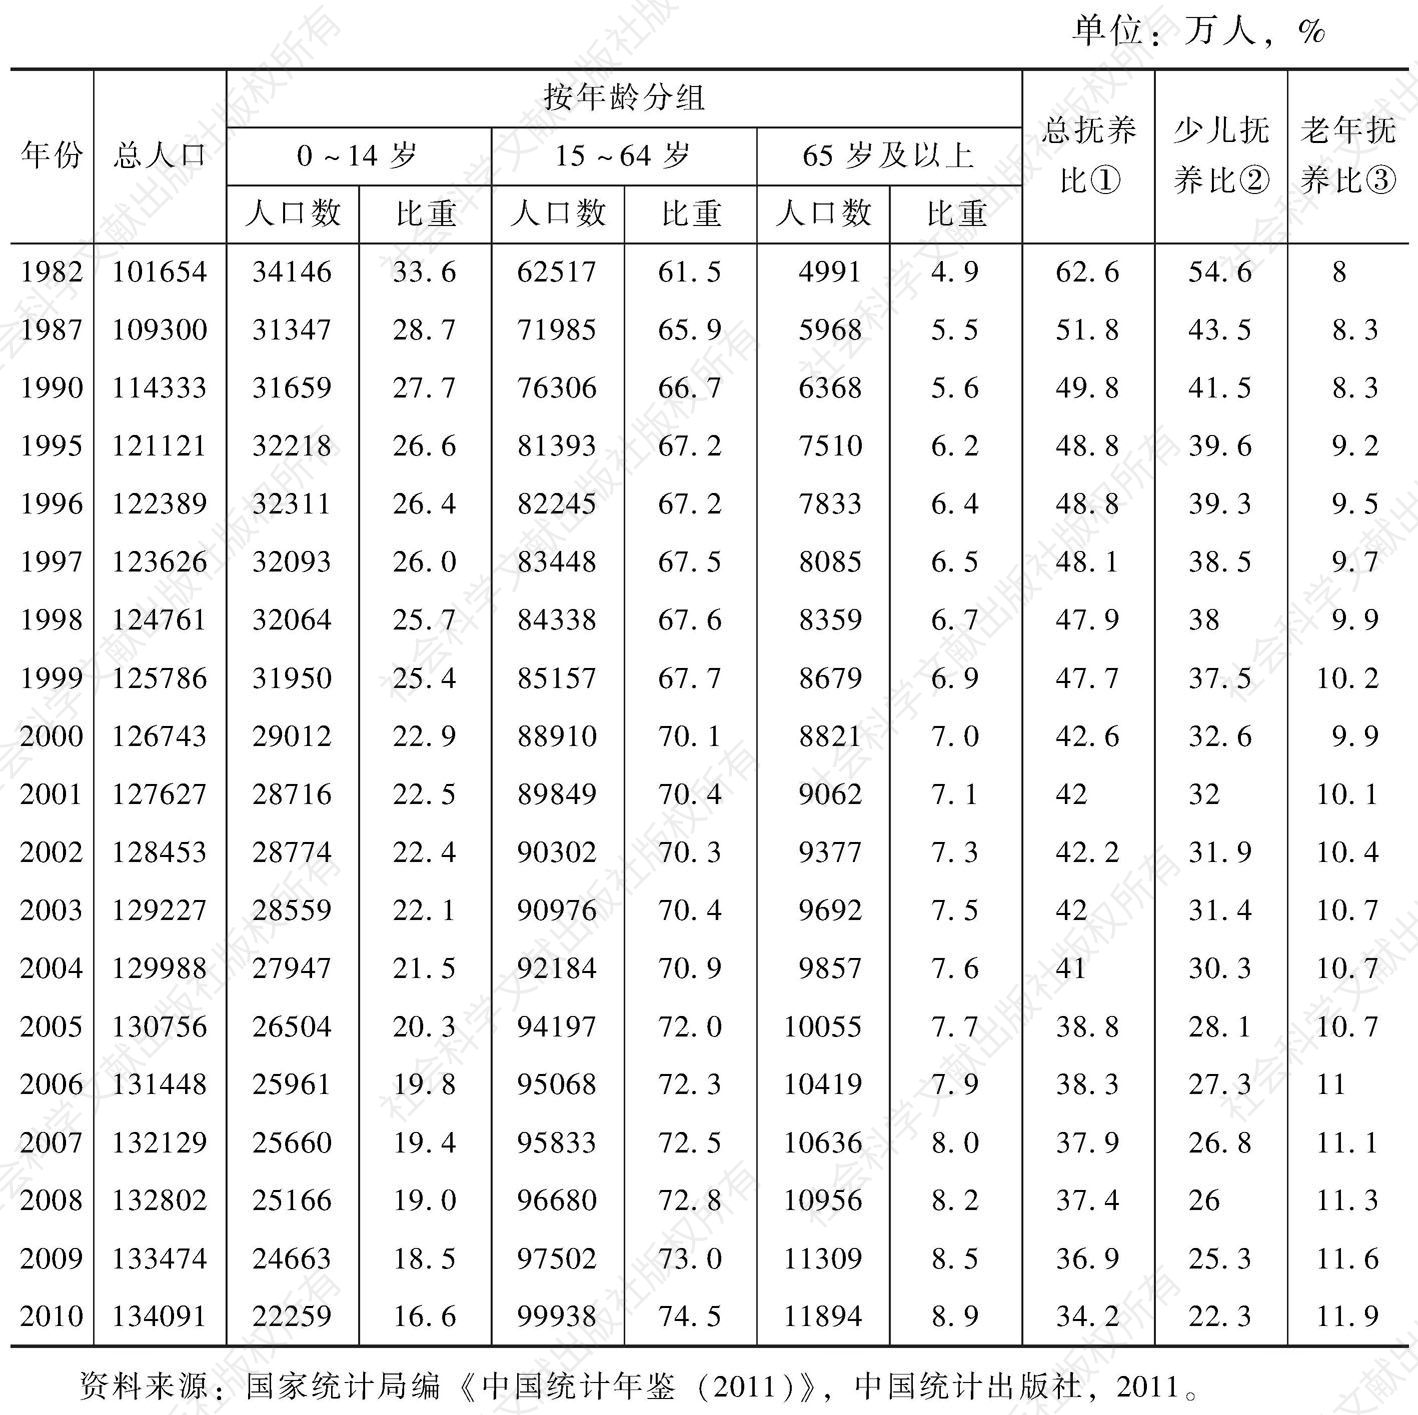 表1-2 1982～2010年中国人口变动情况